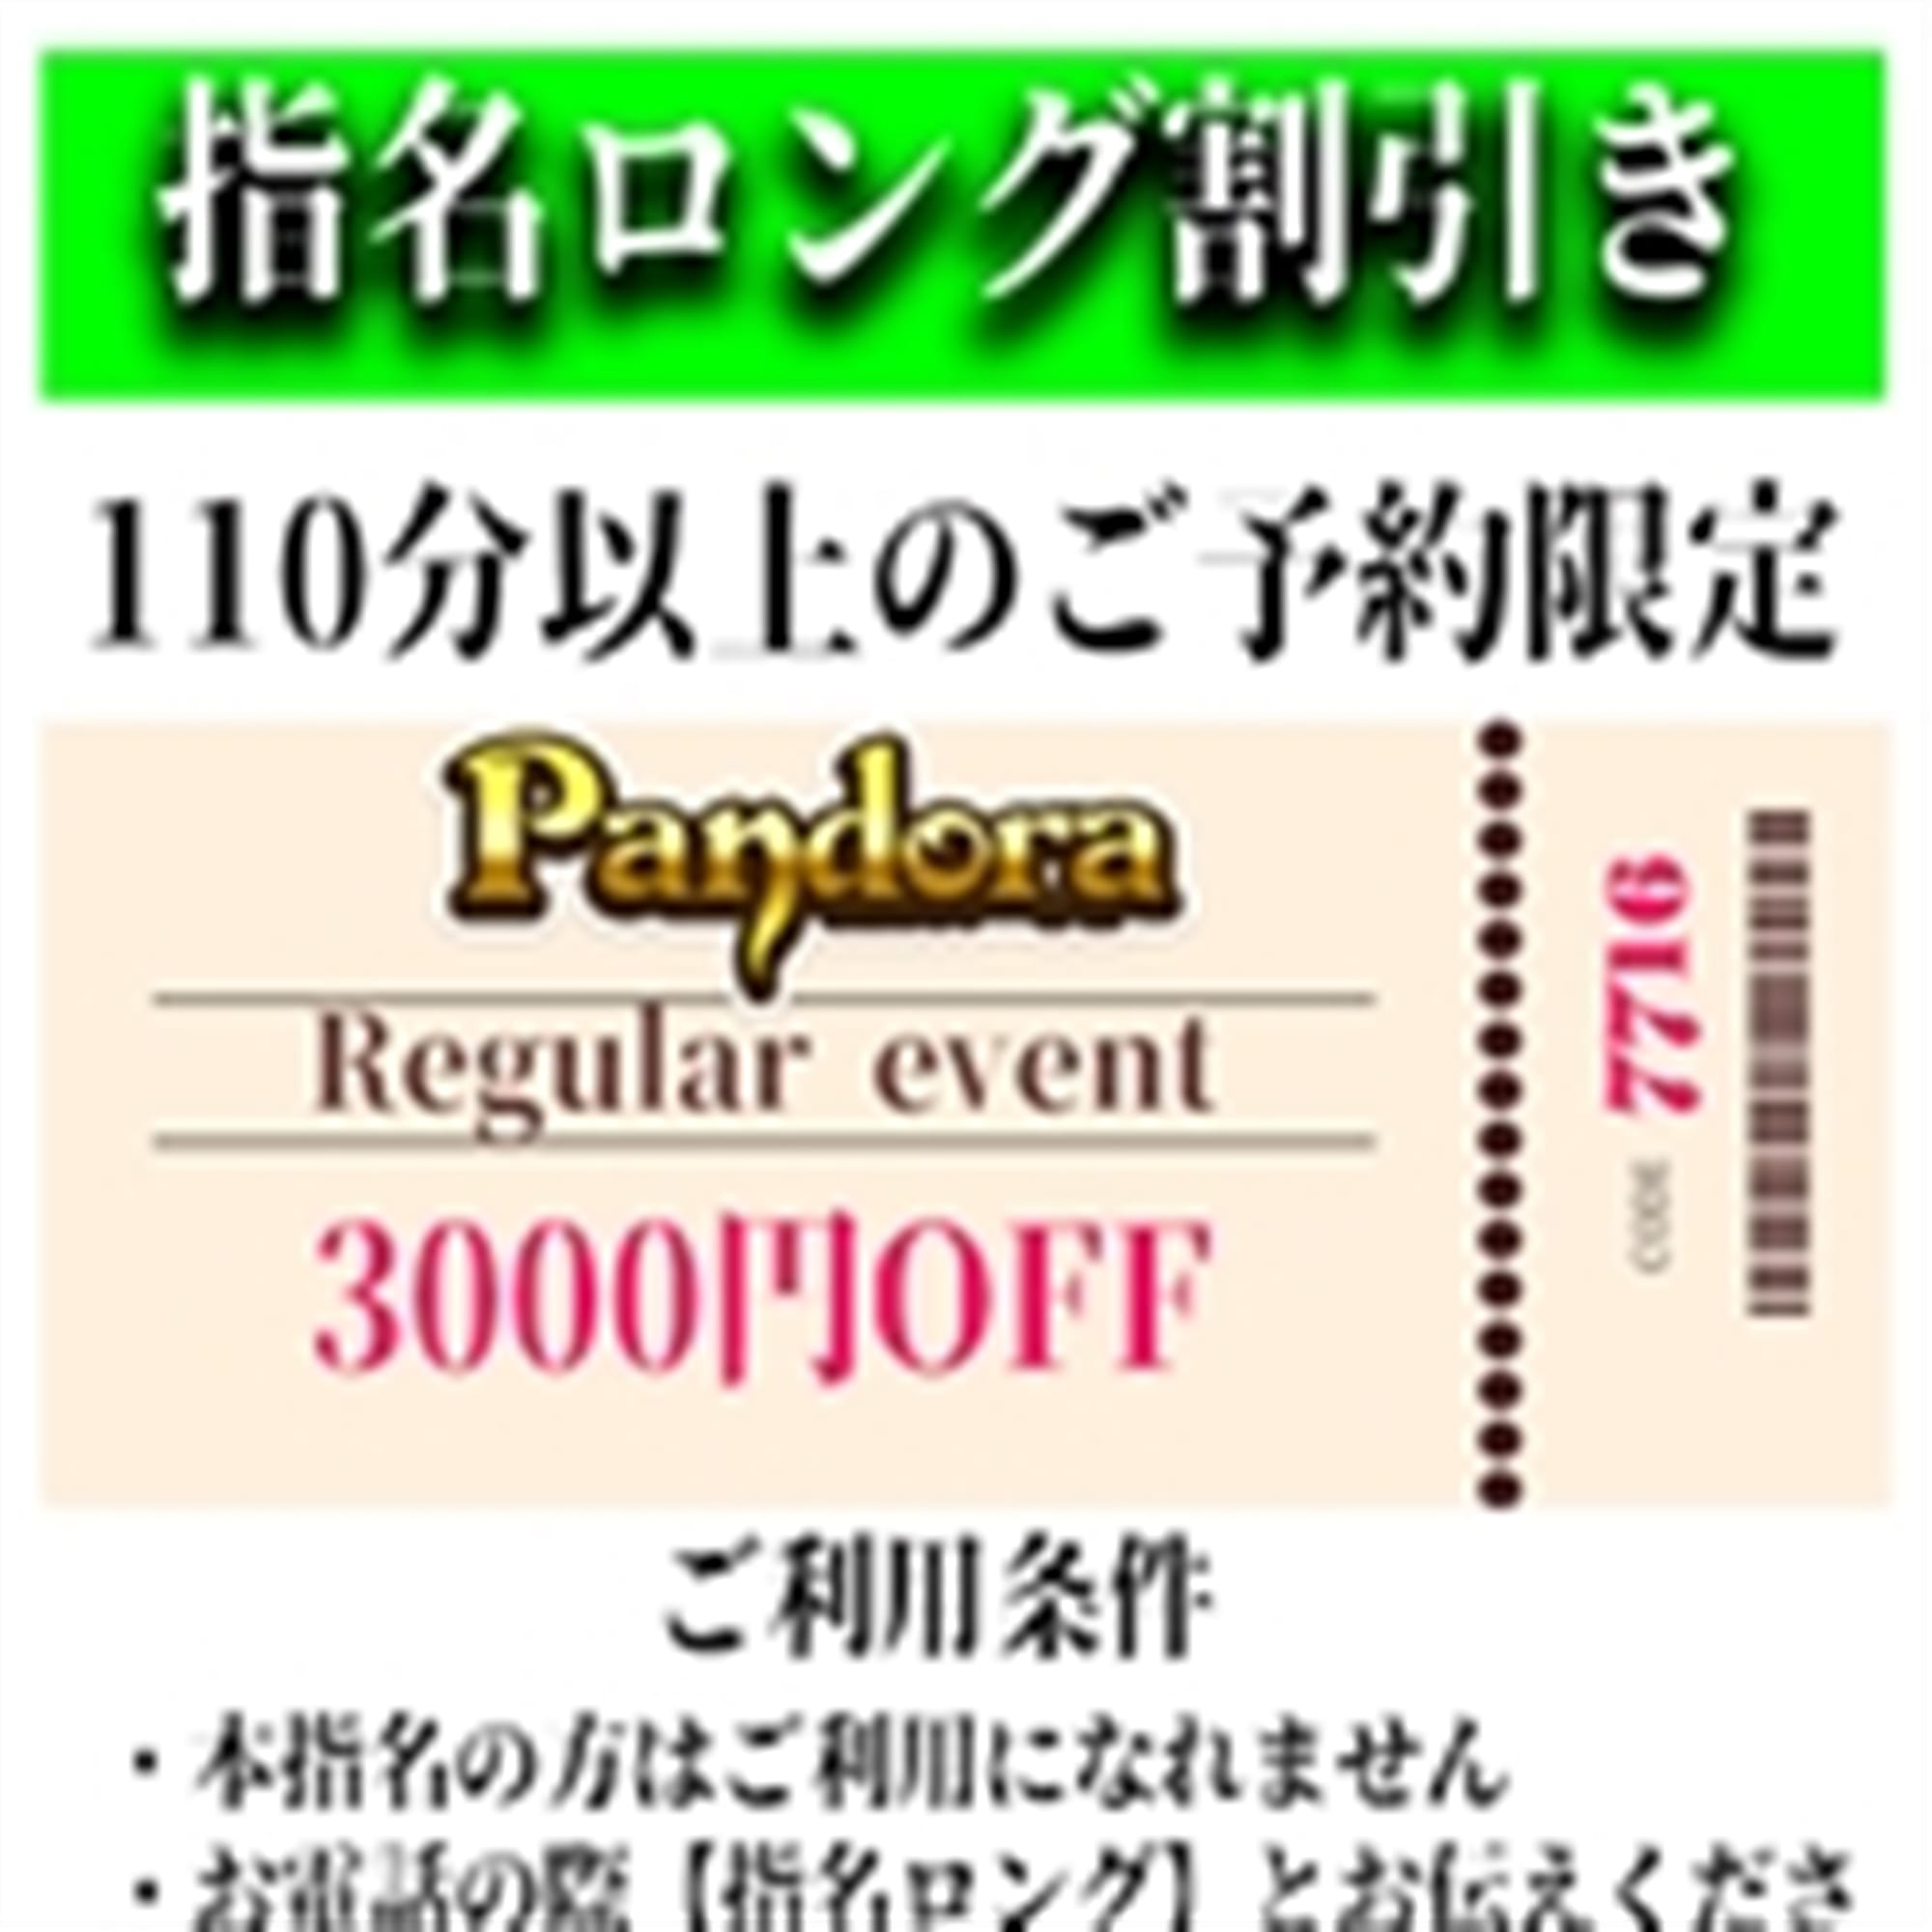 「ご指名のお客様も遊べるロングコース割引」04/17(水) 14:46 | Pandora(パンドラ)新潟のお得なニュース